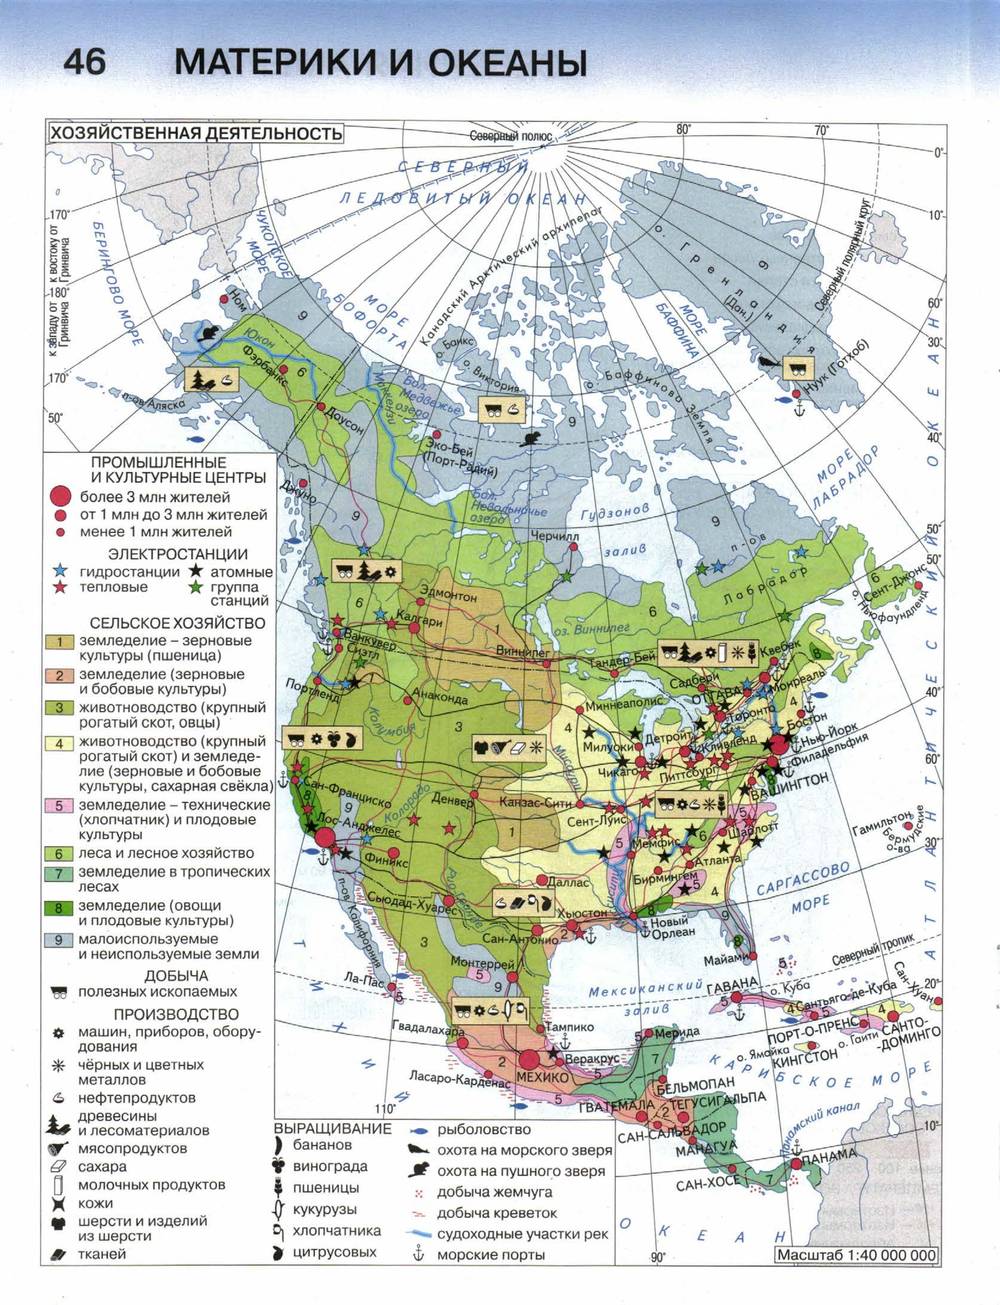 Характеристика карты северная америка. География атлас 7 Северная Америка. Комплексная карта Северной Америки 7 класс. Северная Америка хозяйство карта. Сельское хозяйство Северной Америки атлас.